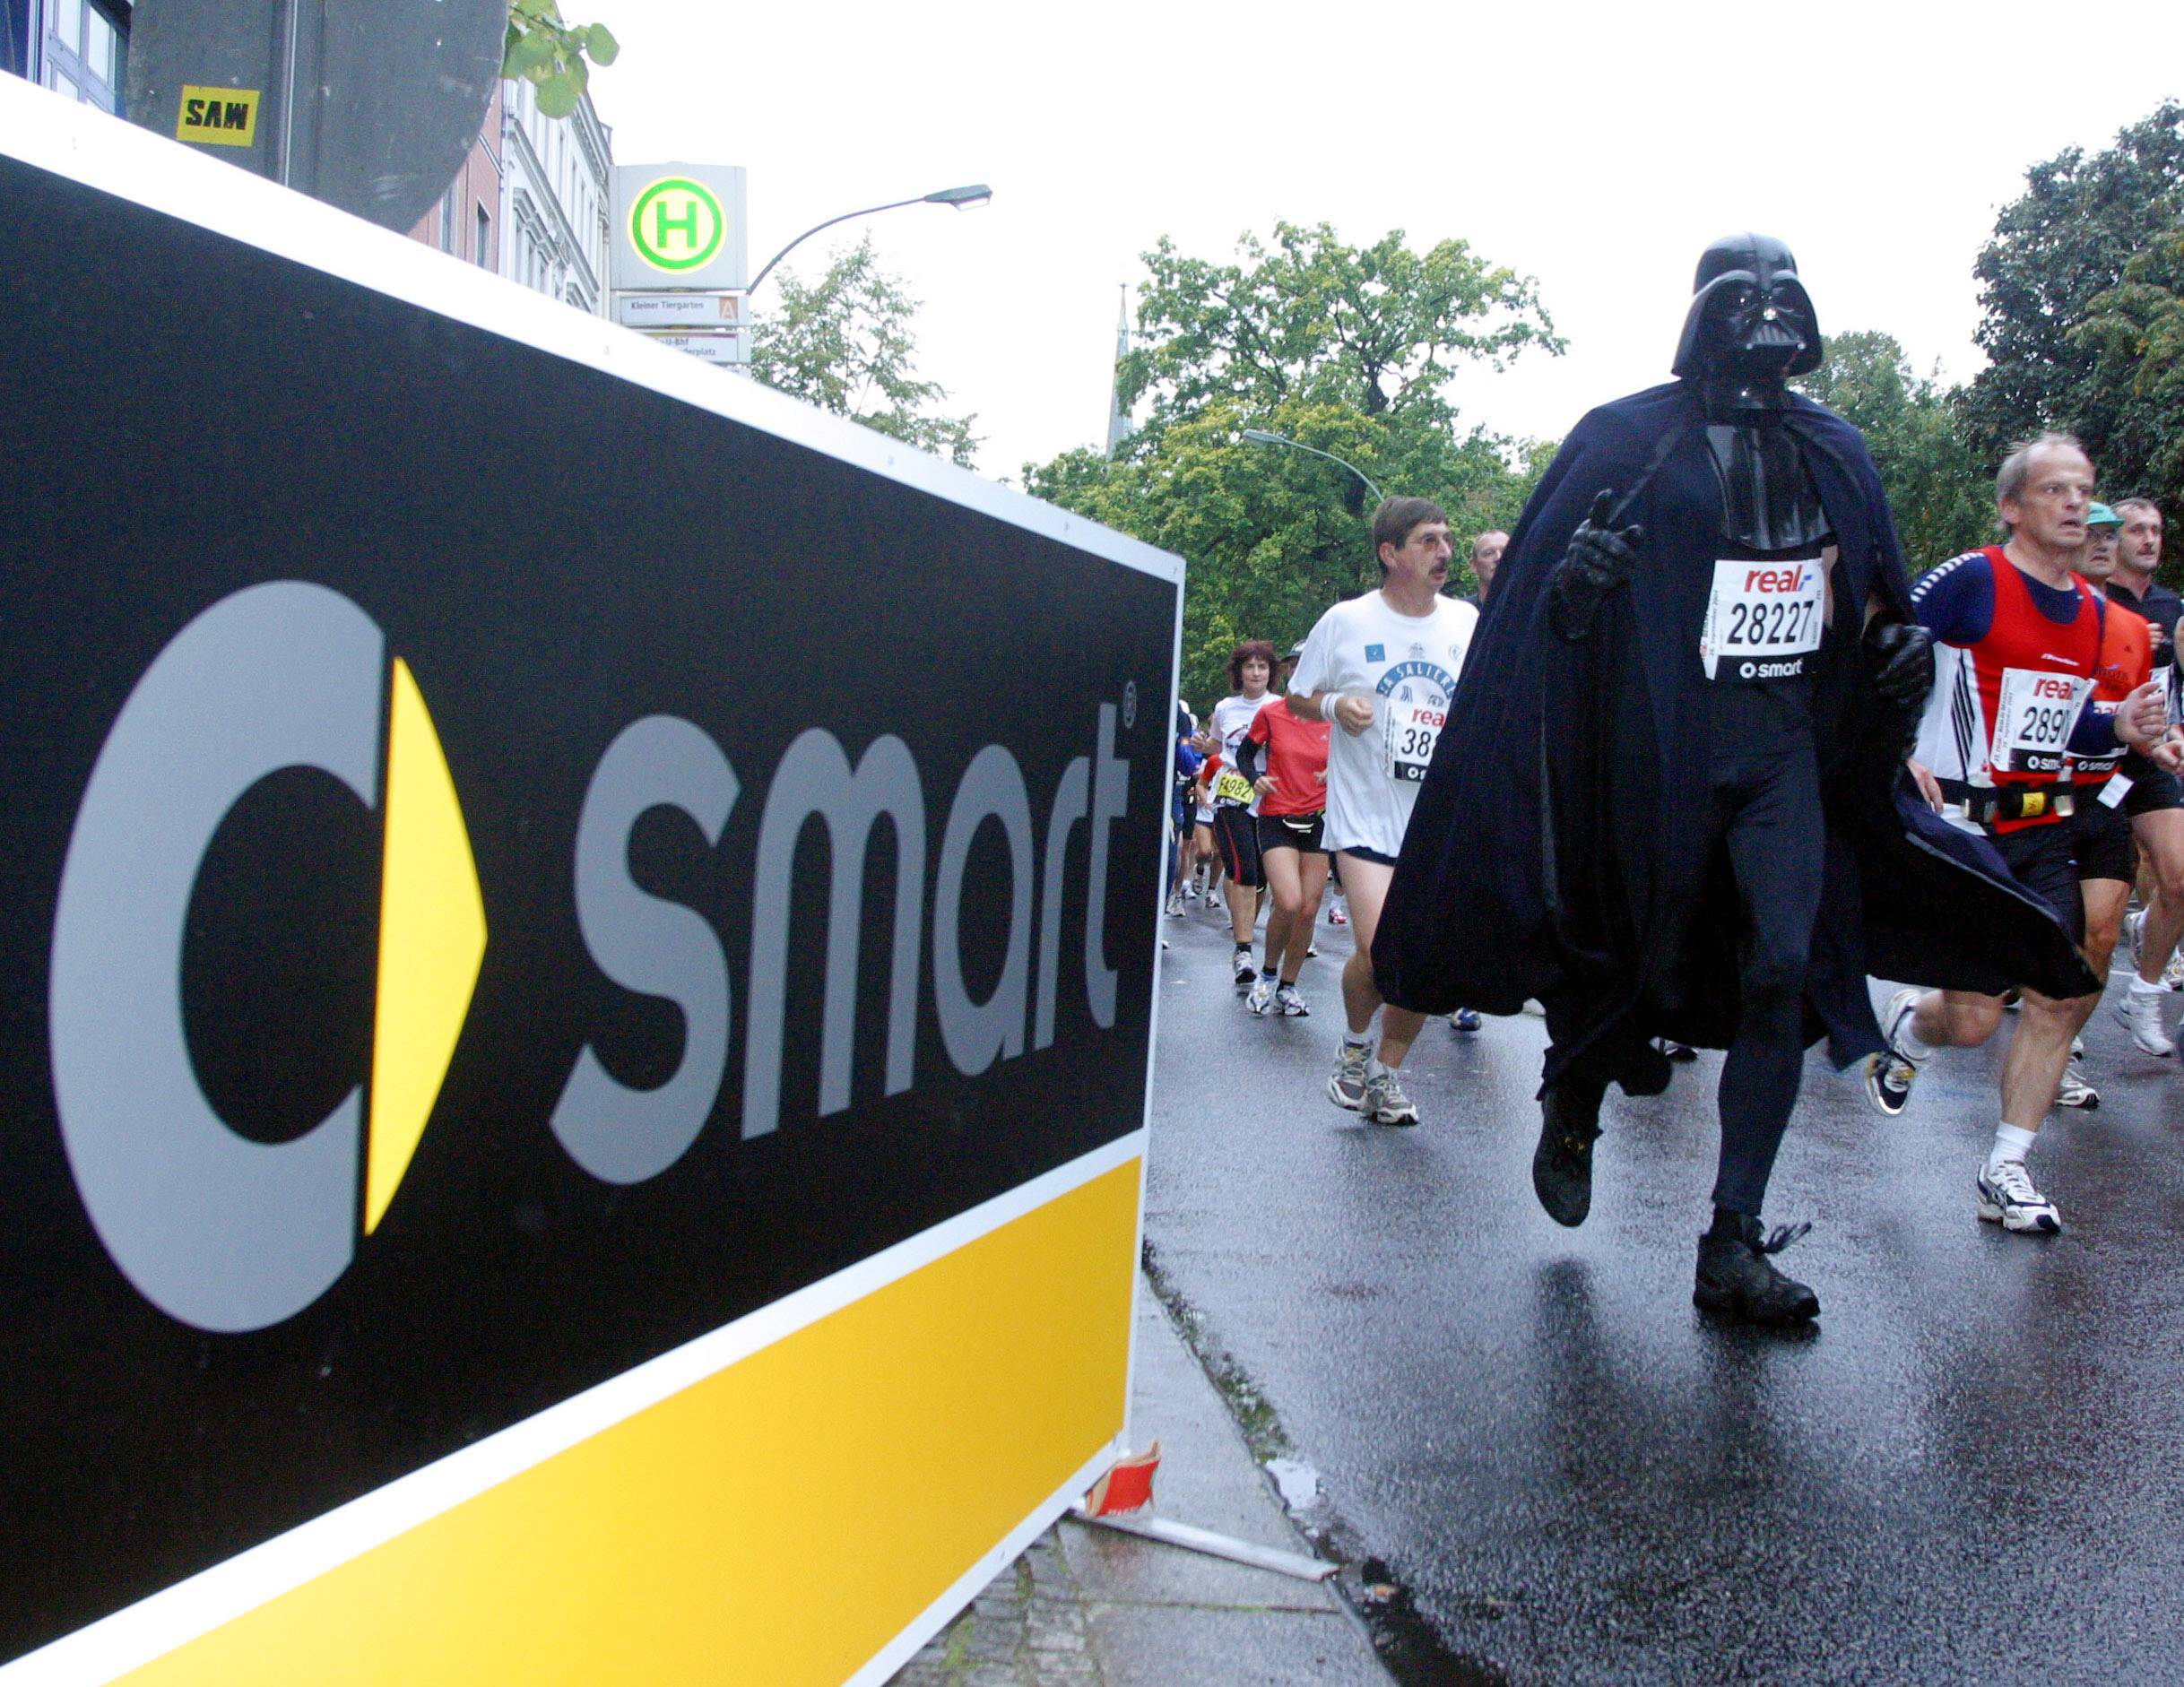 Superhelden in Berlin: Ein als Darth Vader verkleideter Teilnehmer des Berlin Marathons 2004. Foto: Imago/Hoch Zwei/Angerer